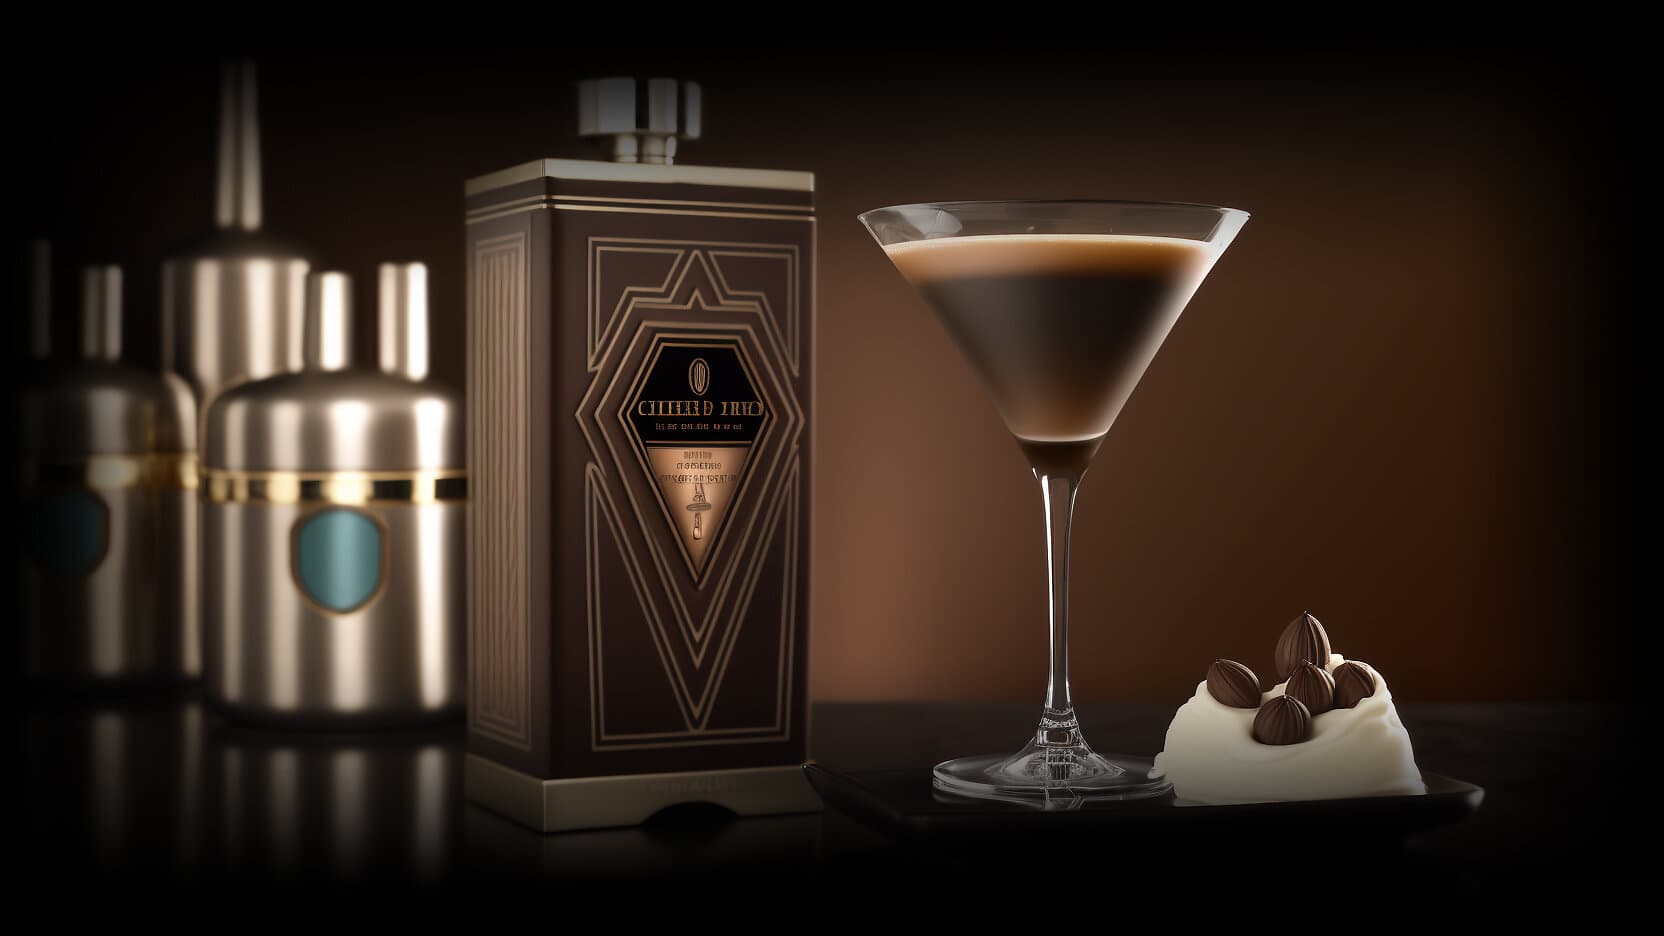 espresso martini art deco bar modern luxury packaging